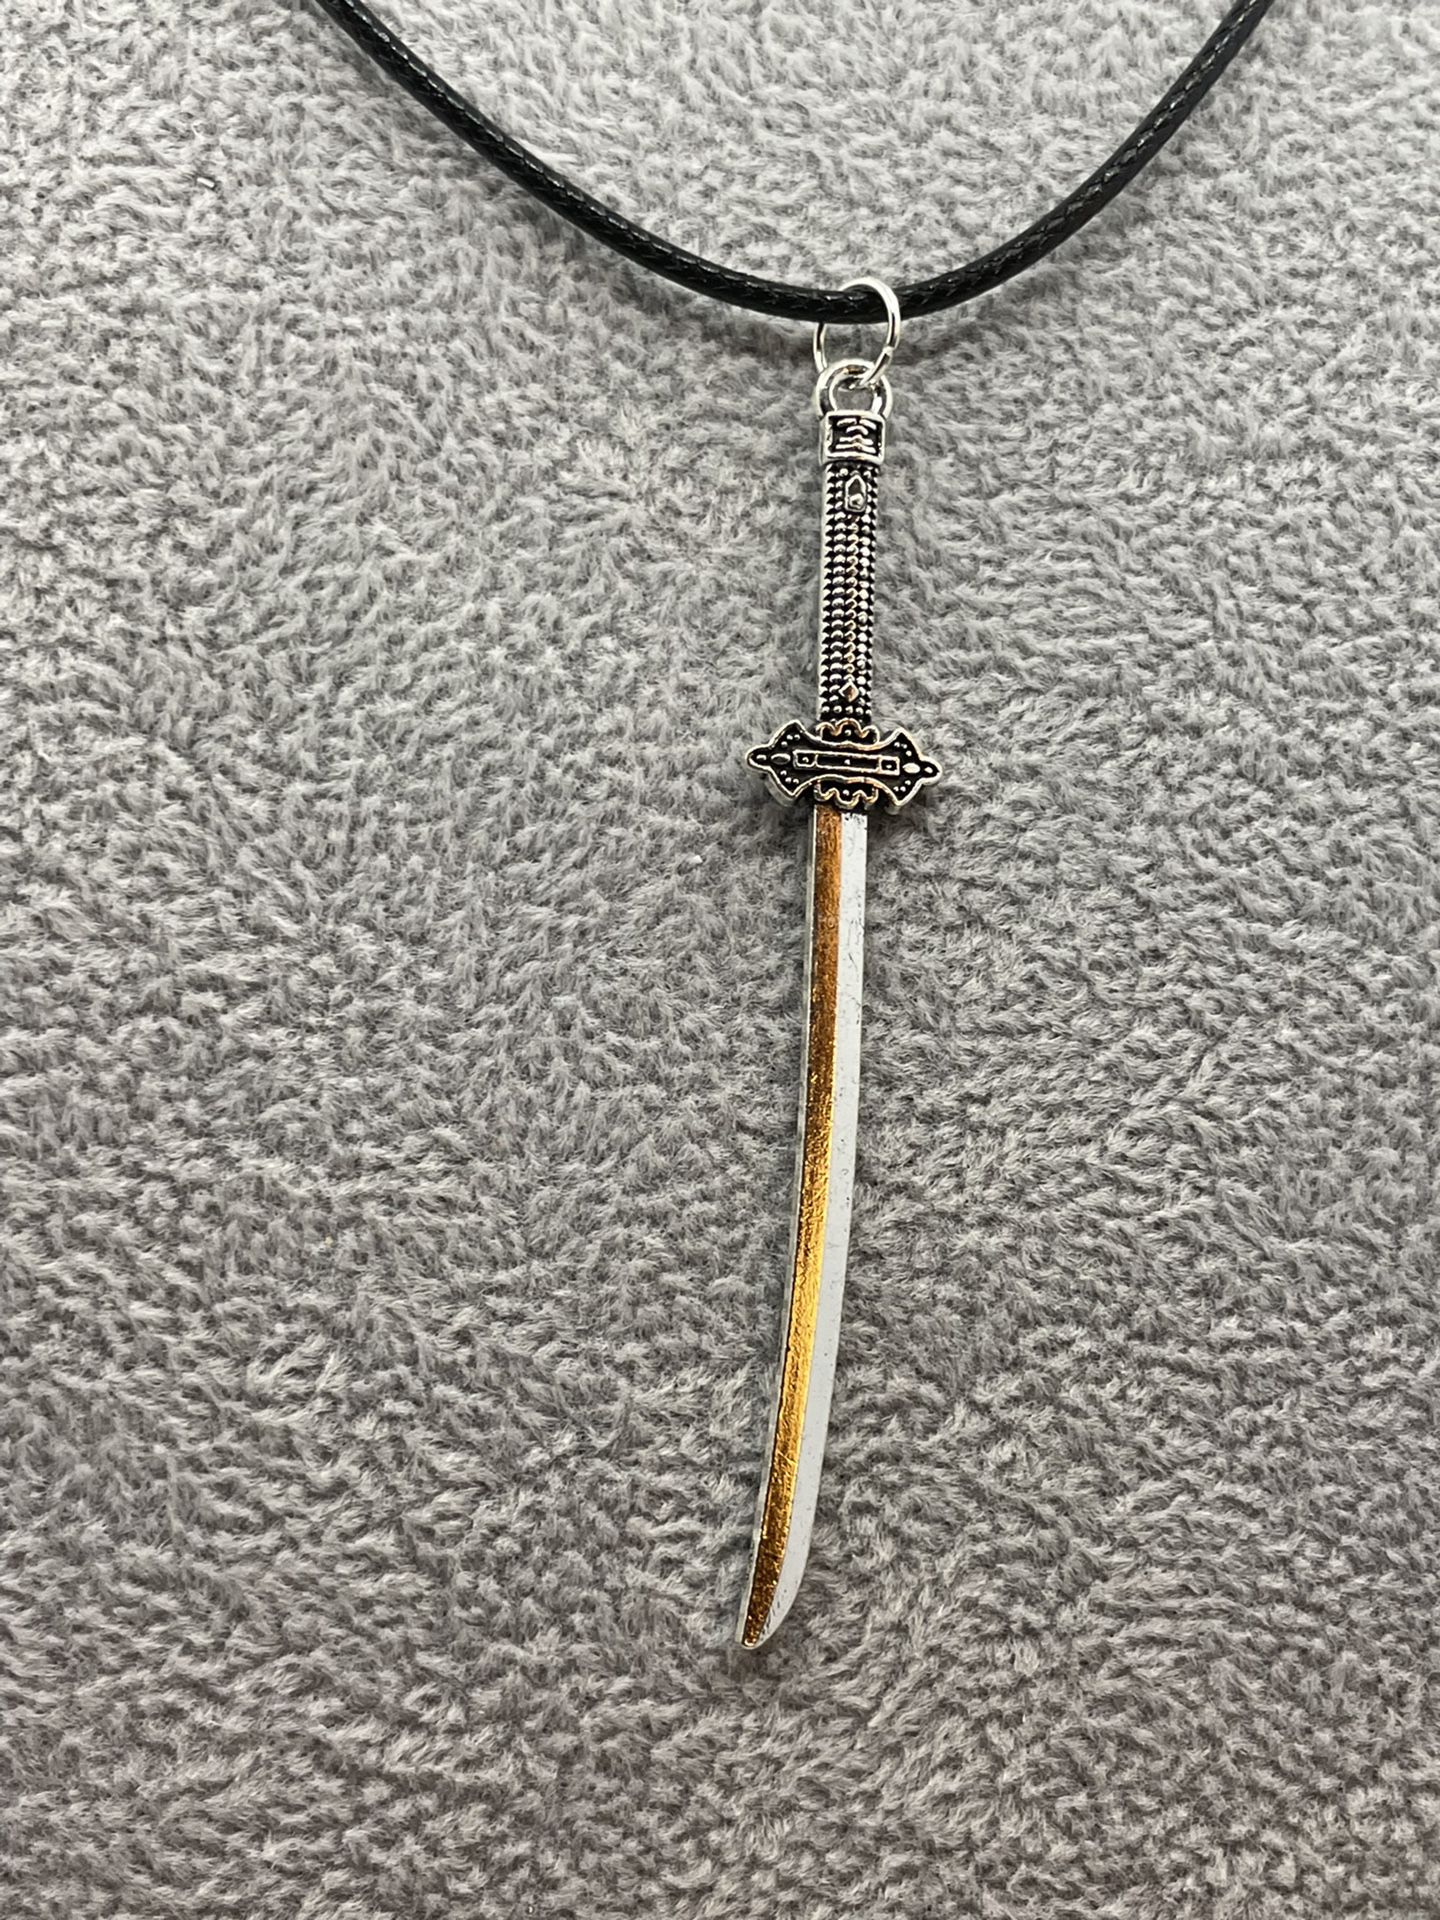 Sword Necklaces